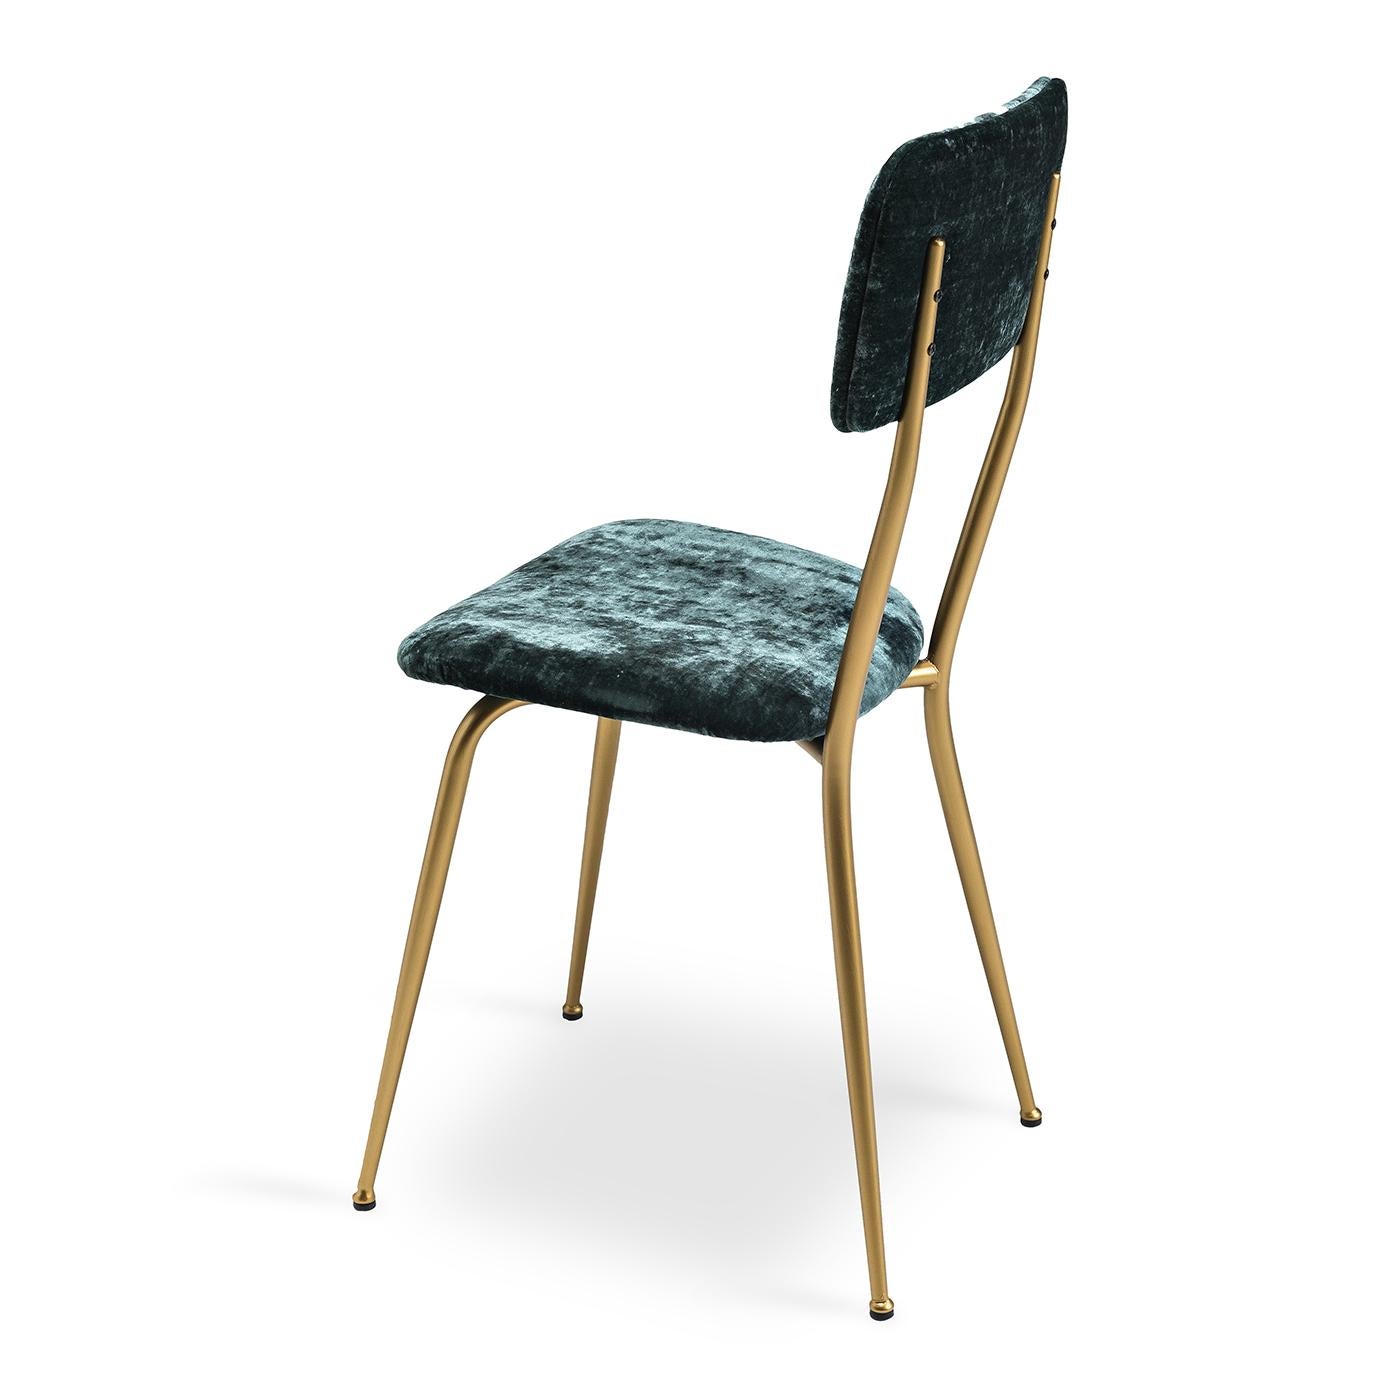 Der Stuhl Miss Ava 13 zeichnet sich durch ein schlankes Metallgestell mit gebürstetem Messing aus. Der luxuriöse ozeanblaue Samtstoff, mit dem Rückenlehne und Sitzfläche des Sessels bezogen sind, ergänzt die Metalltöne mühelos: eine harmonische